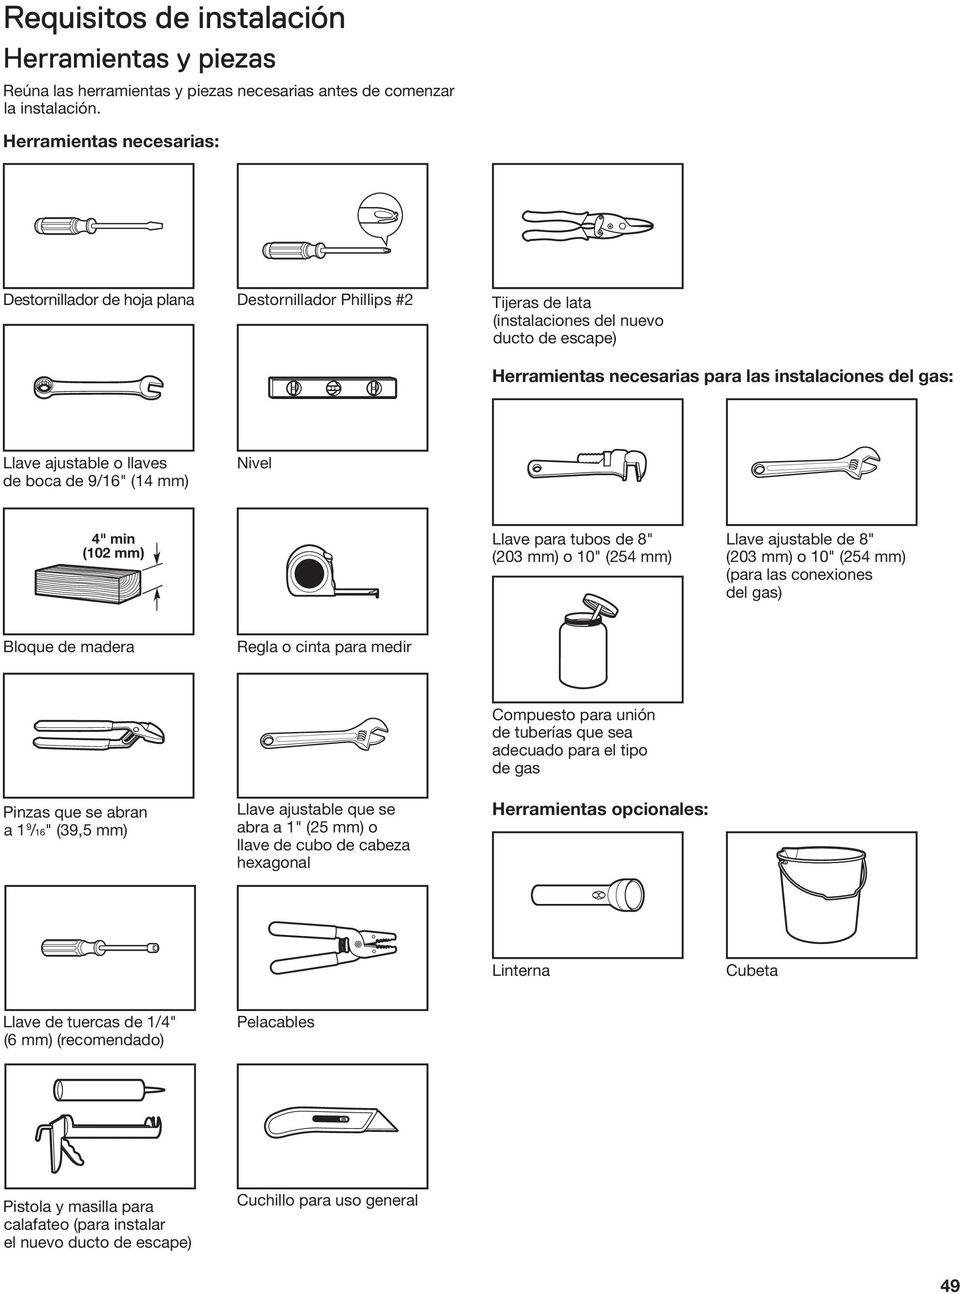 Llave ajustable o llaves de boca de 9/16" (14 mm) Nivel 4" min (102 mm) Llave para tubos de 8" (203 mm) o 10" (254 mm) Llave ajustable de 8" (203 mm) o 10" (254 mm) (para las conexiones del gas)